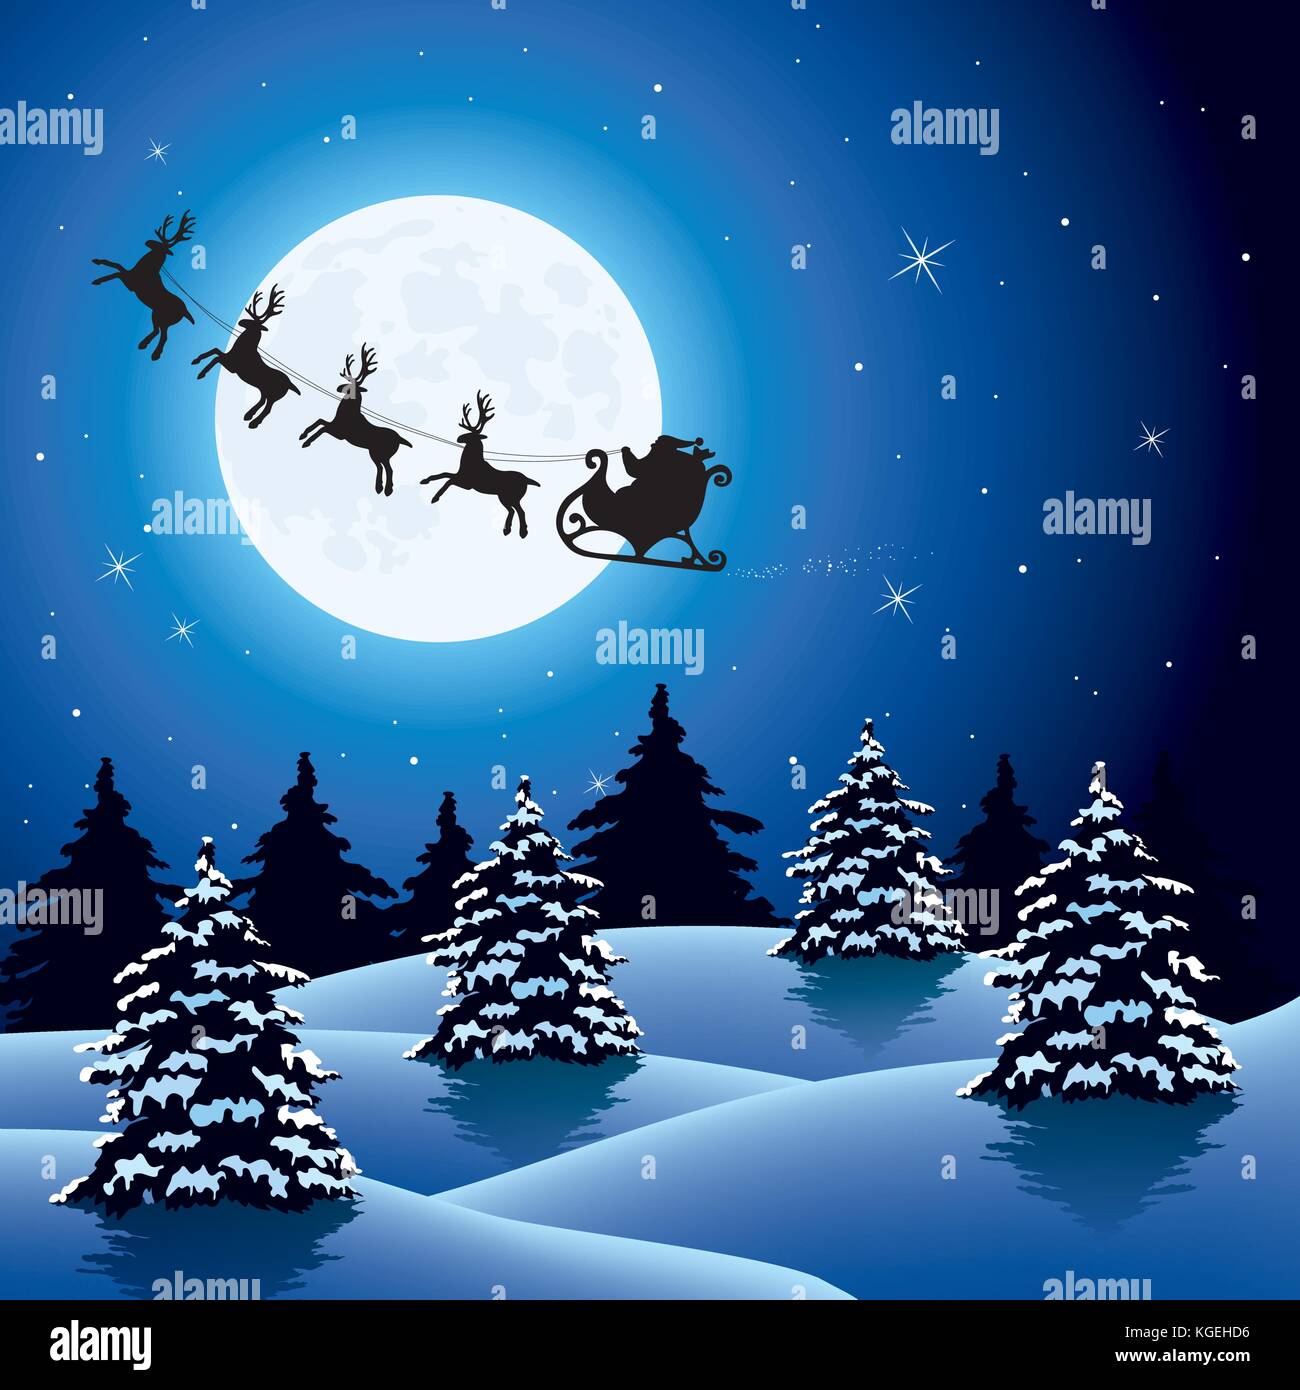 Vektor weihnachten urlaub Hintergrund mit Silhouetten der fliegende Weihnachtsmann fahren Schlitten und Rentiere. winter Nachthimmel mit hellen Mond und Sterne, Bäume Stock Vektor